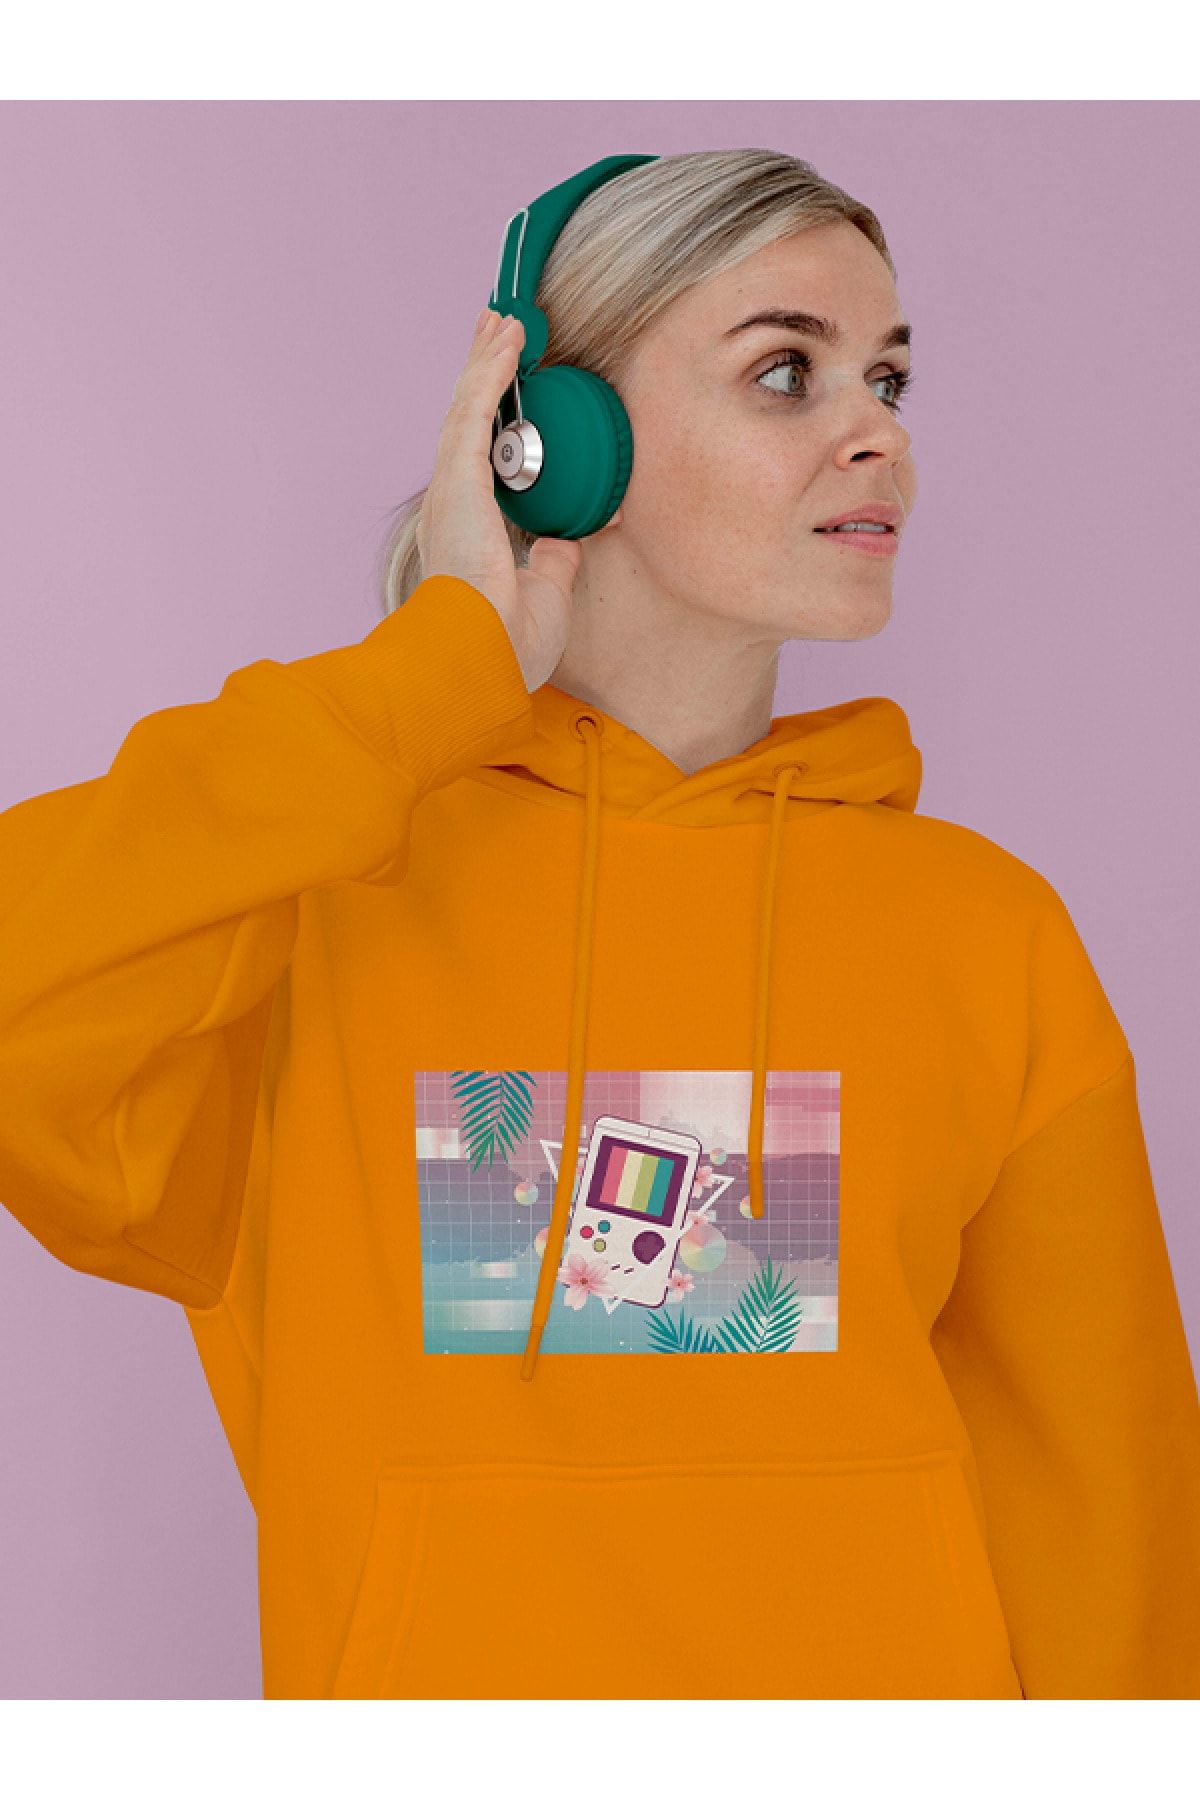 MIJUSTORE Vapor Wave Tetris Design Baskılı Tasarım 3 Iplik Kalın Sarı Hoodie Sweatshirt